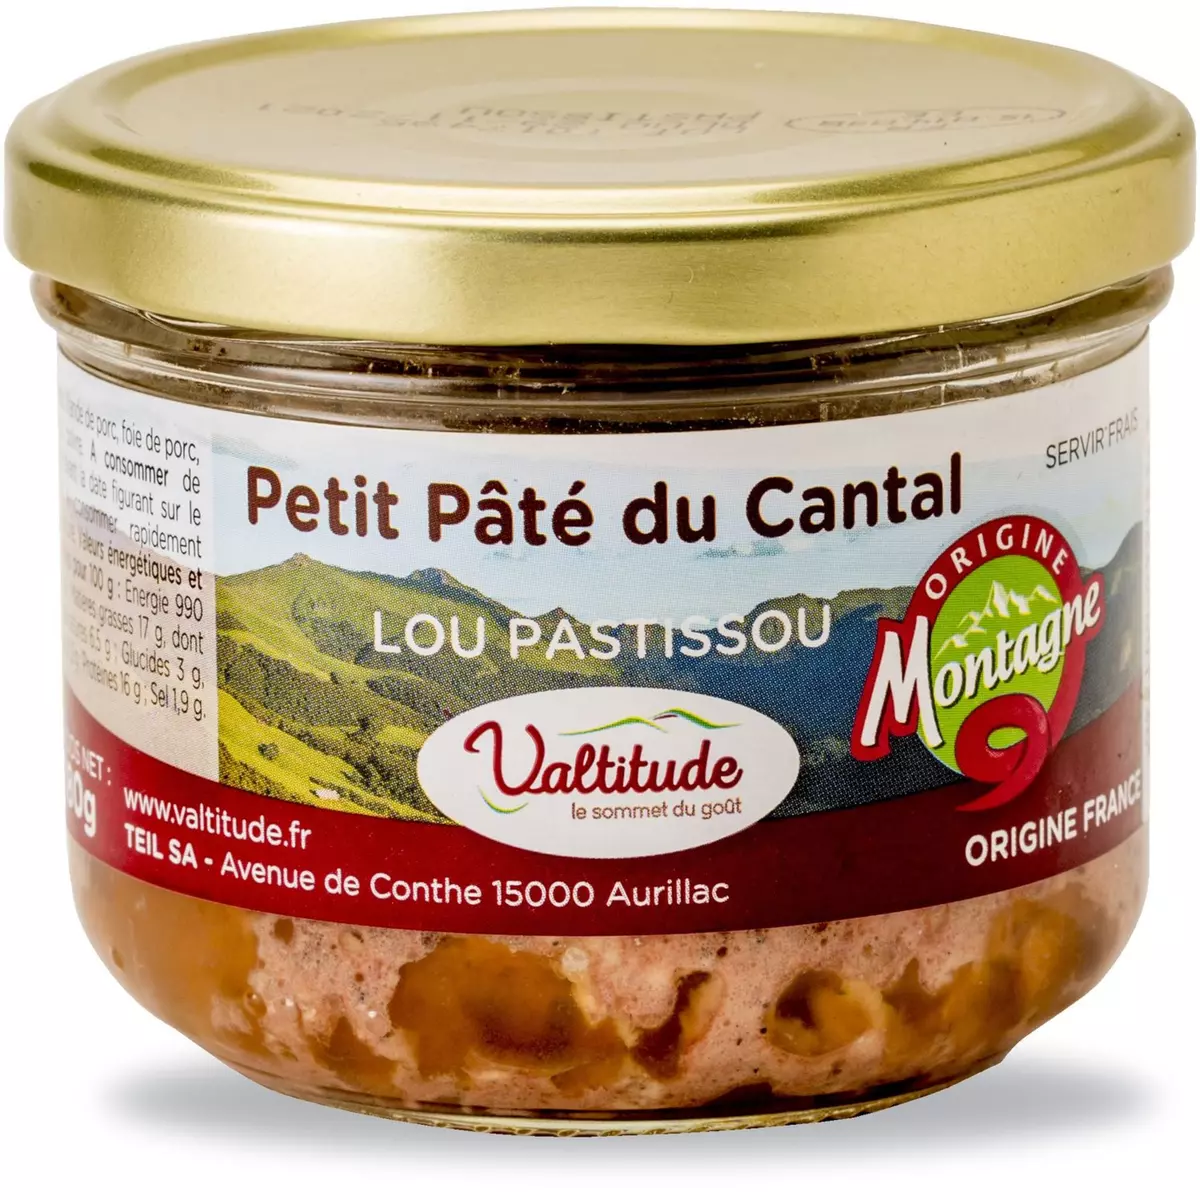 VALTITUDE Petit pâté du Cantal Lou Patissou 180g